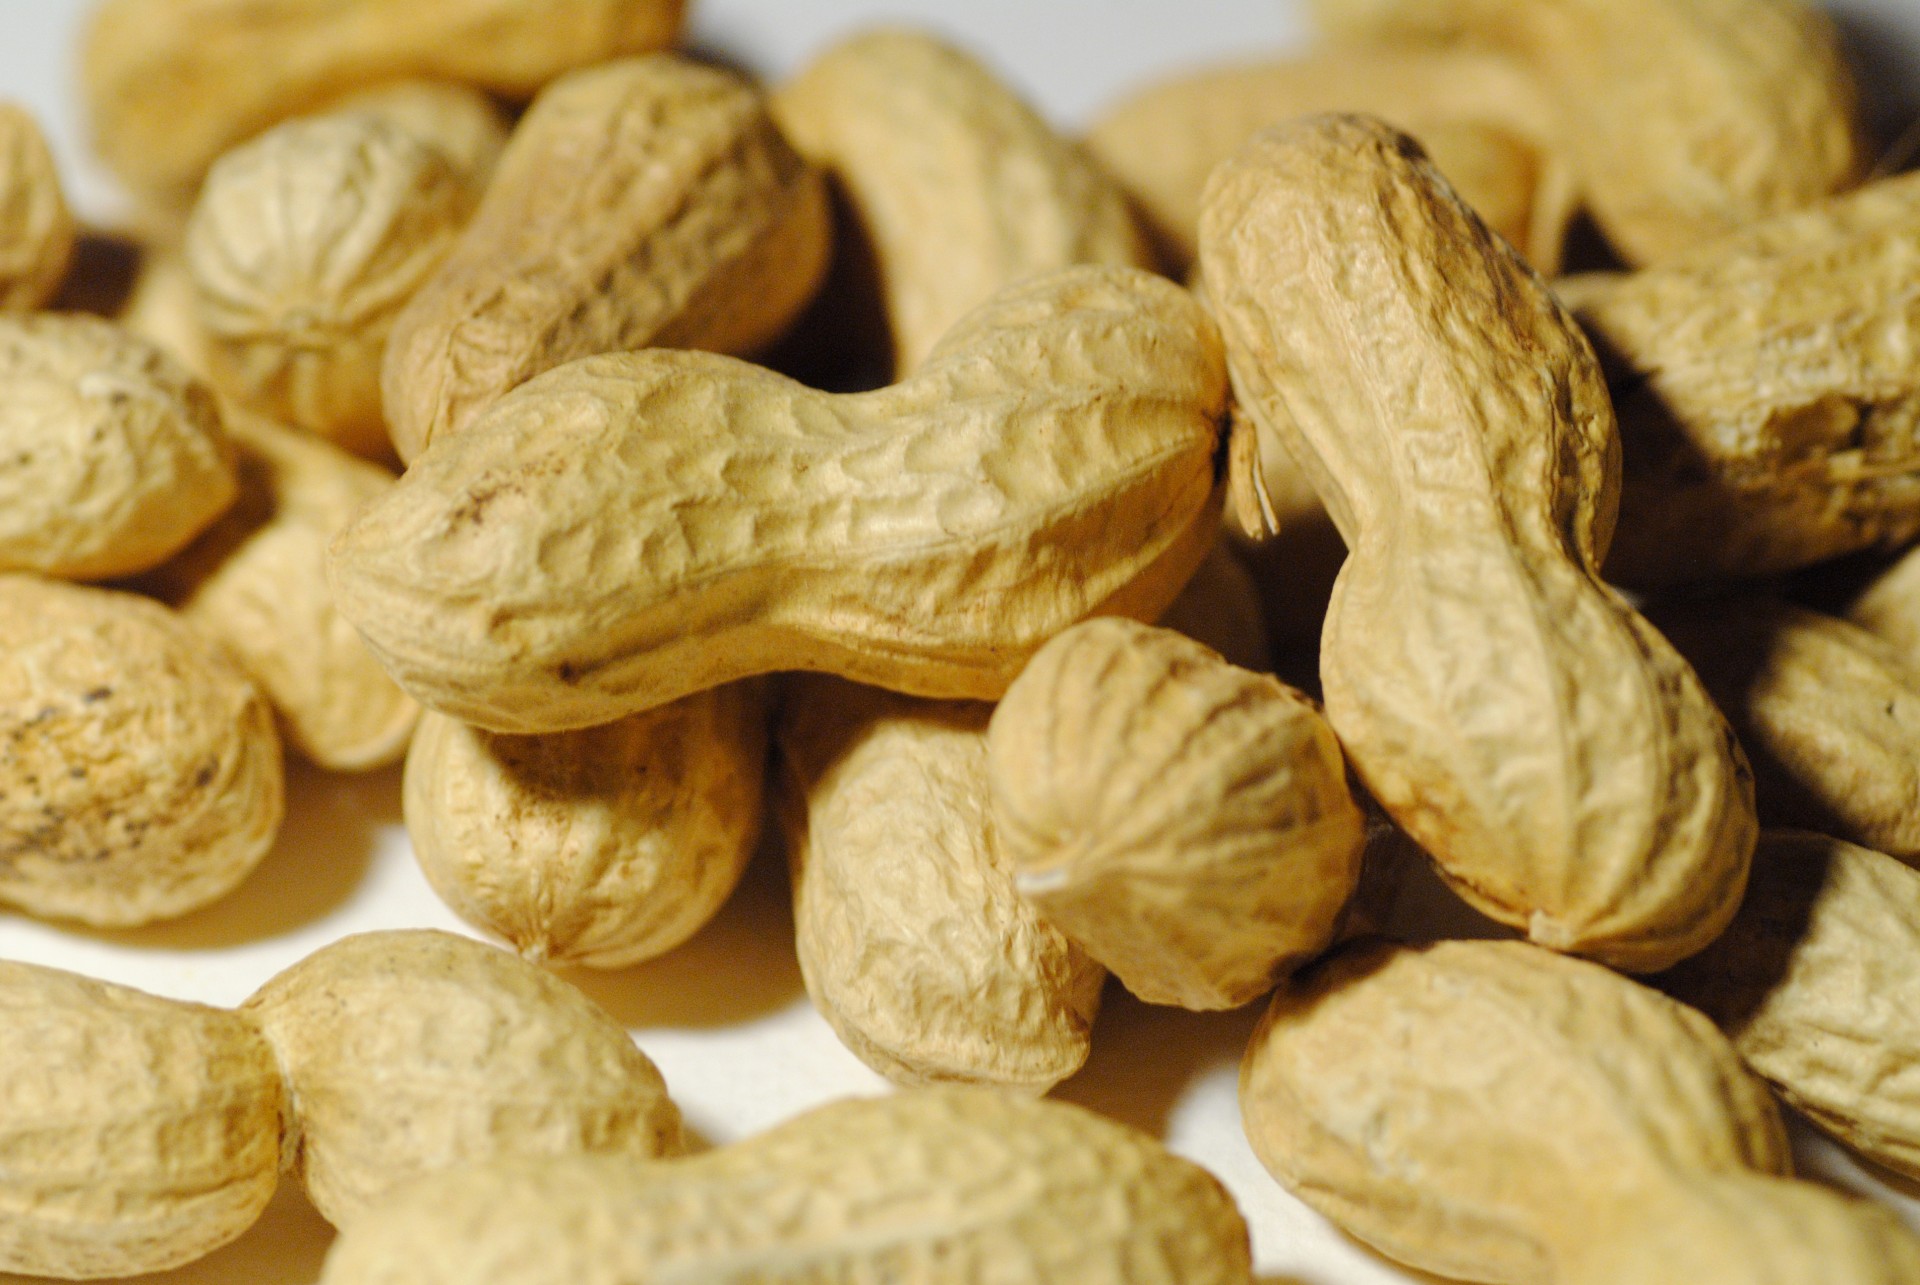 peanut peanuts legume free photo